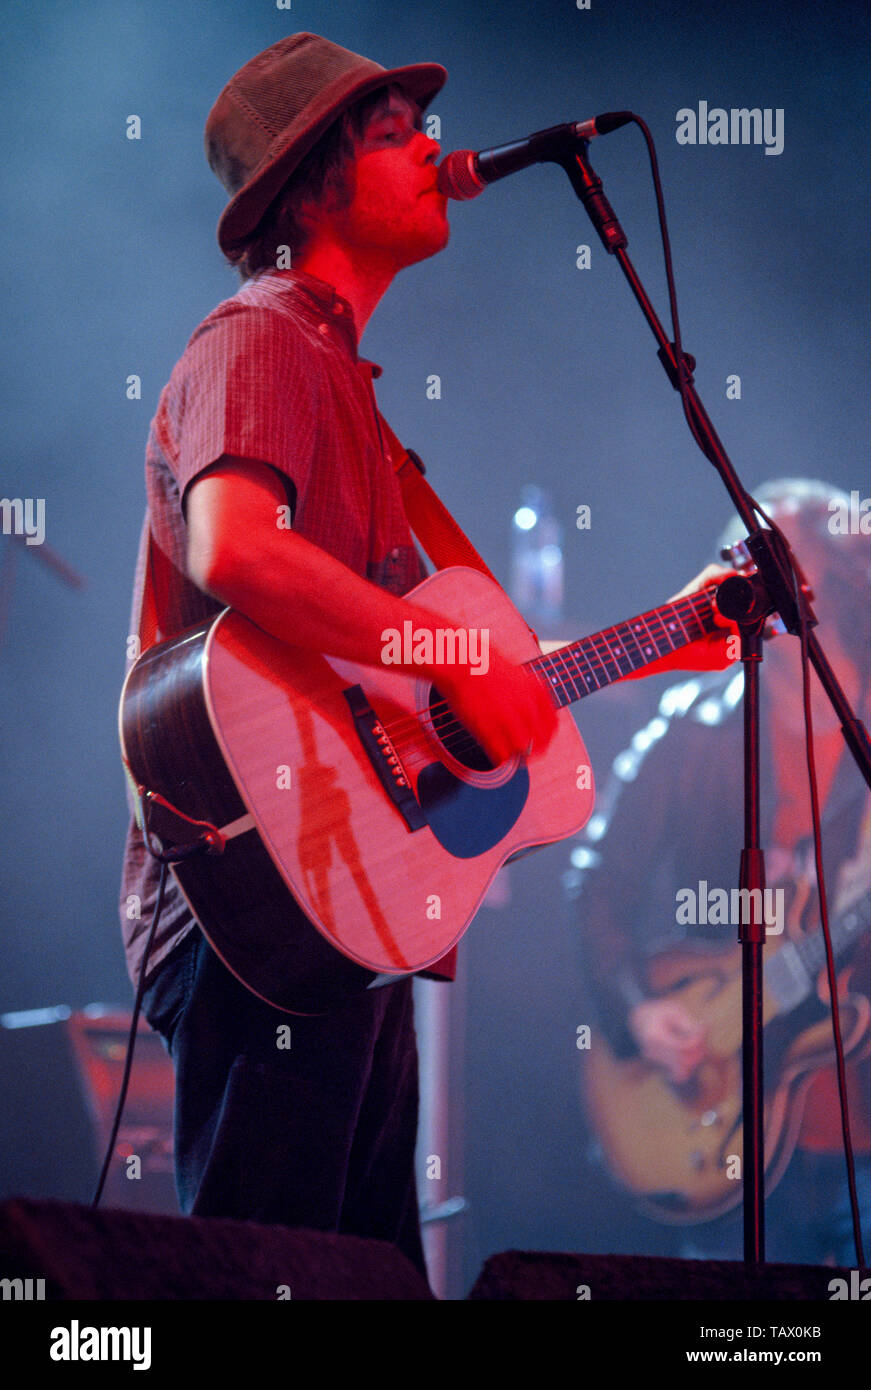 Le Corail en concert au V2003, Chelmsford, Essex, Angleterre, Royaume-Uni. Banque D'Images